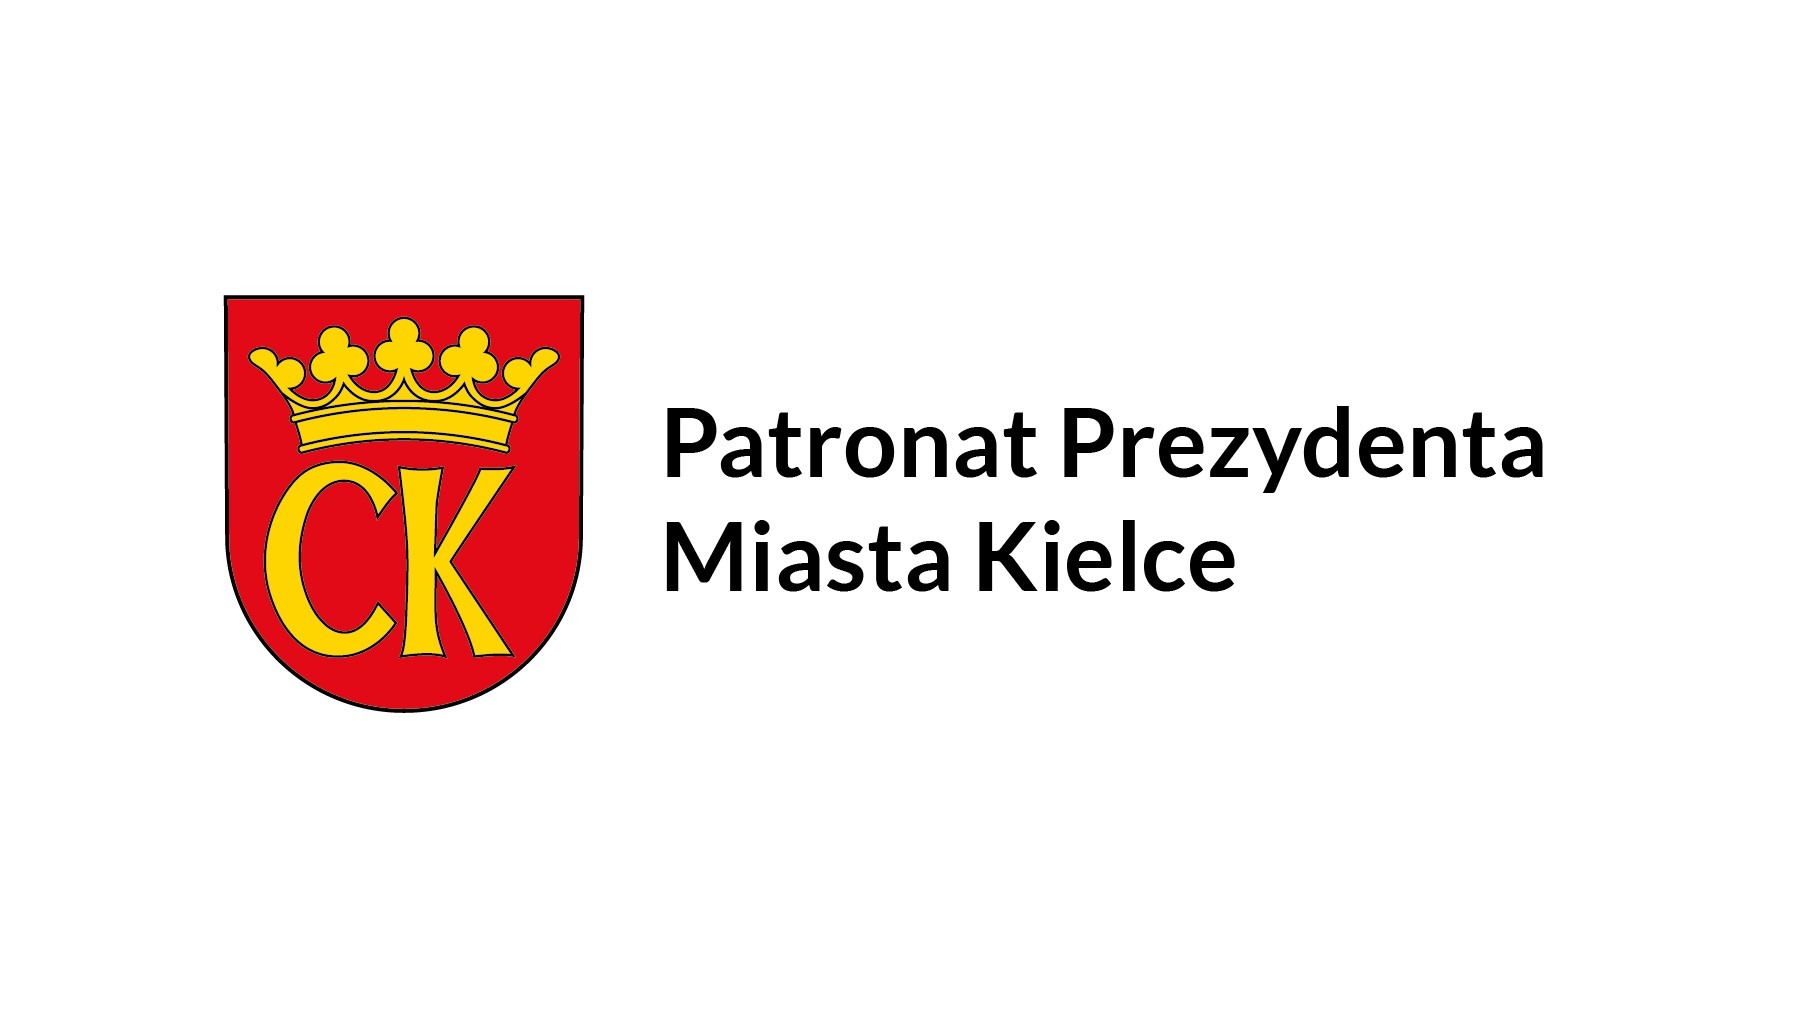 Patronat honorowy Prezydenta Miasta Kielce nad projektem Świętokrzyskie - dobre sąsiedztwo